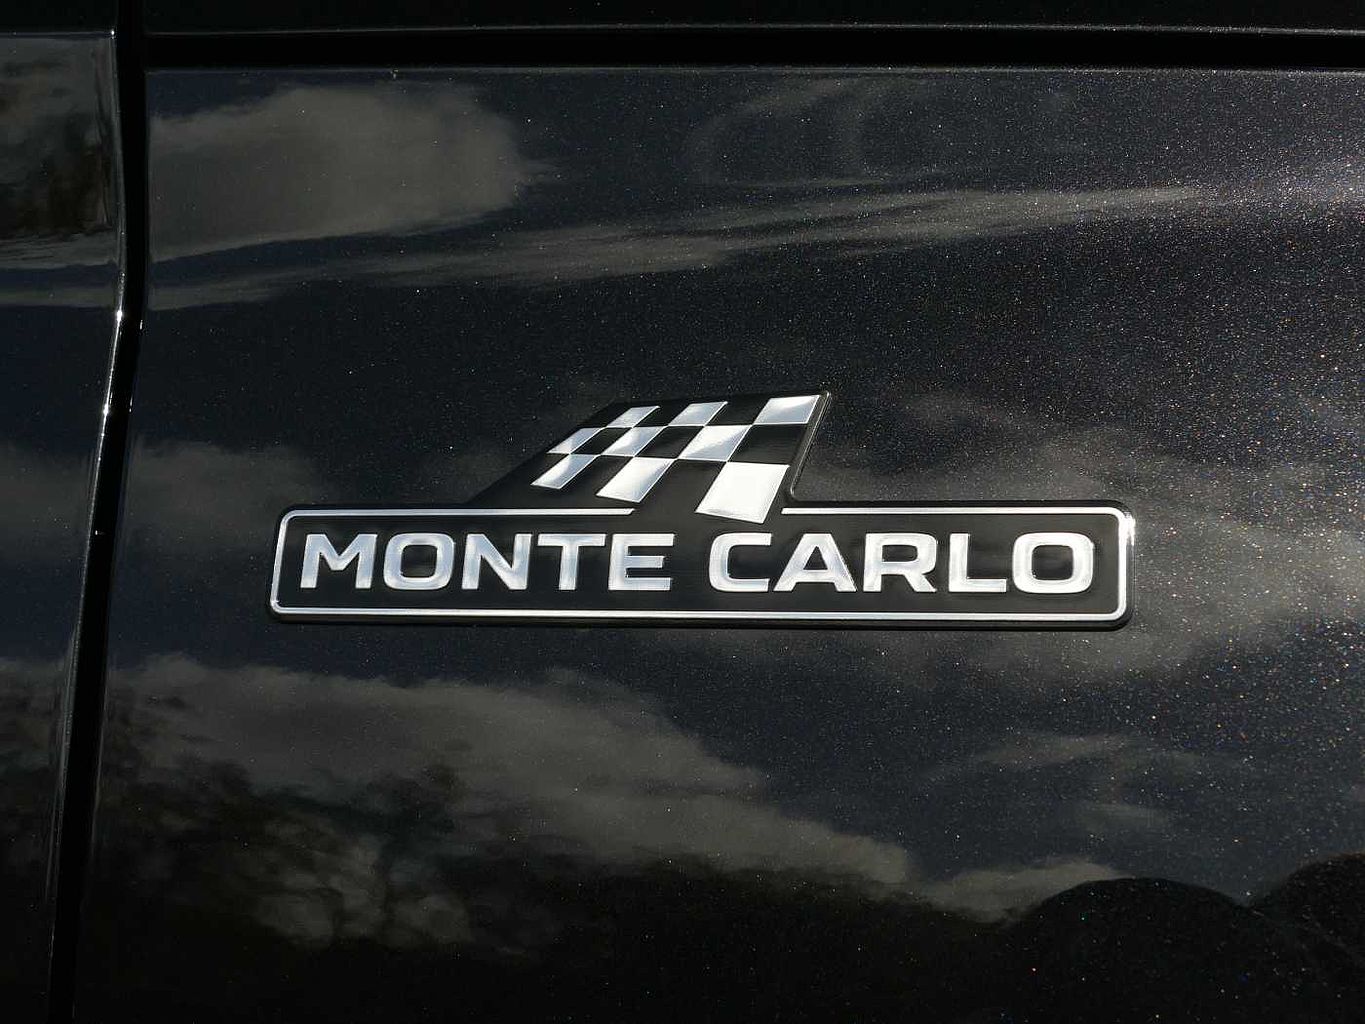 SKODA Kamiq 1.5 TSI (150ps) Monte Carlo Auto/DSG SUV